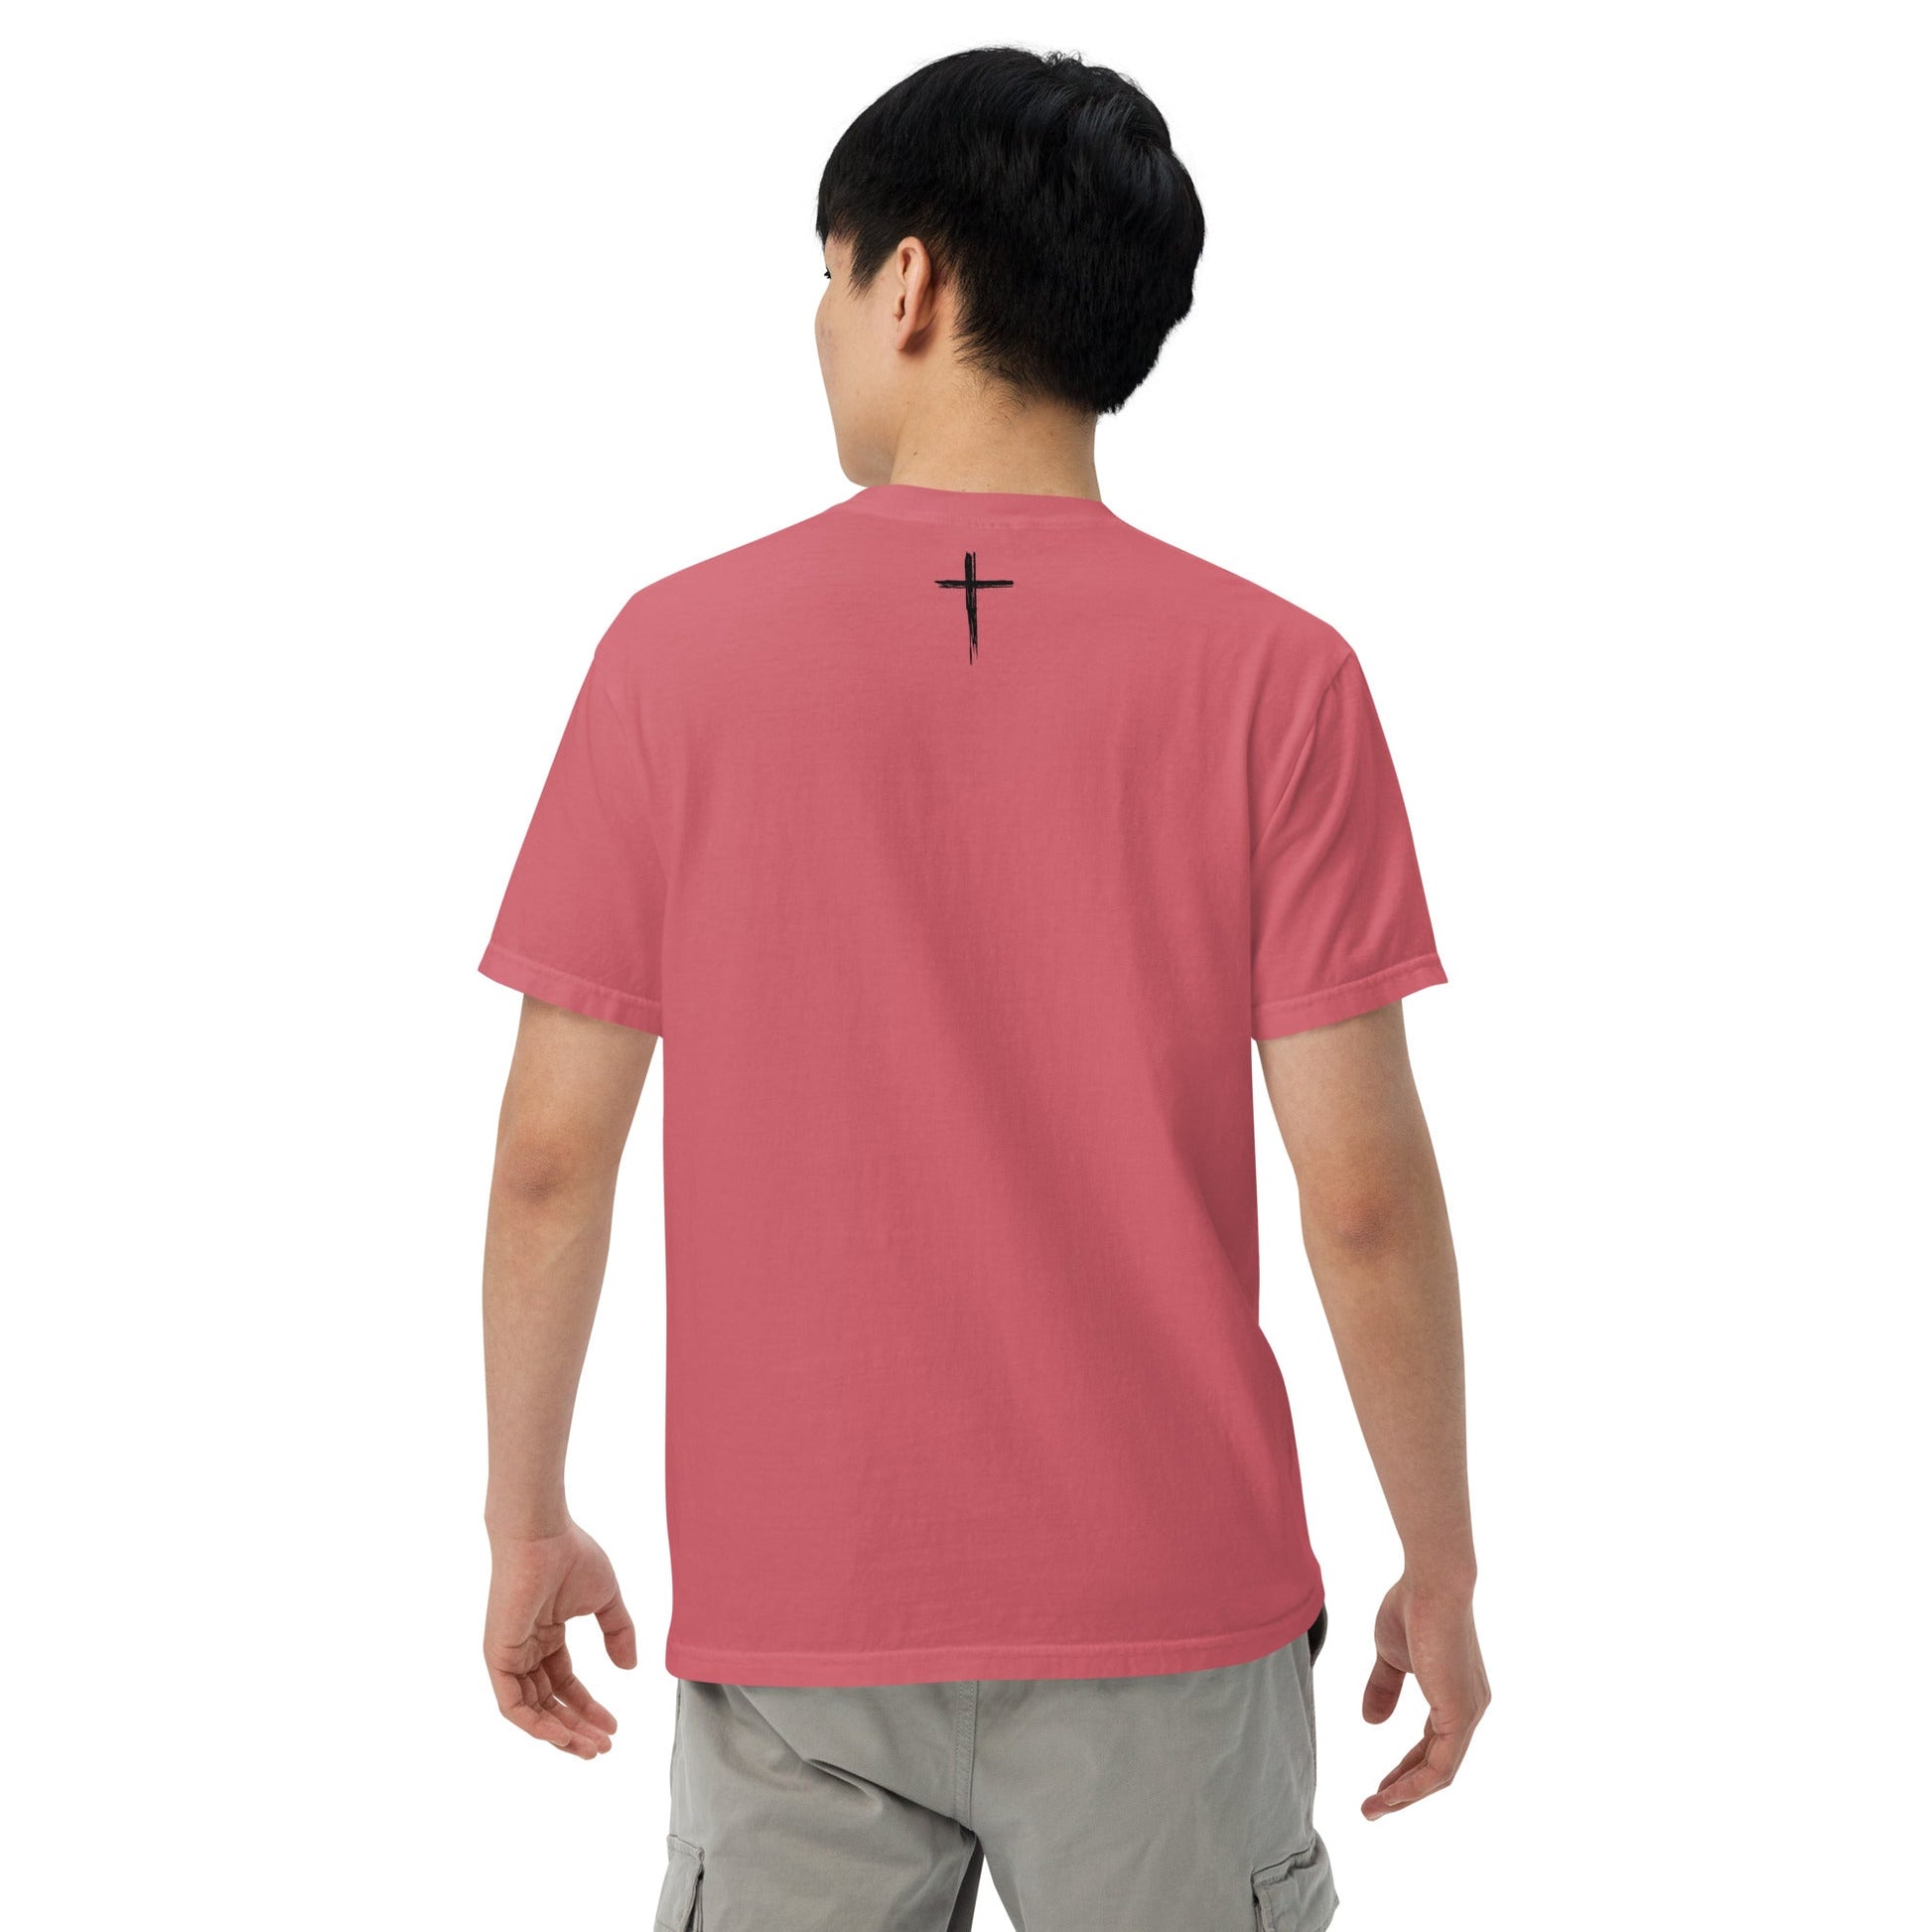 Tetelestai t-shirt - Bold Faith